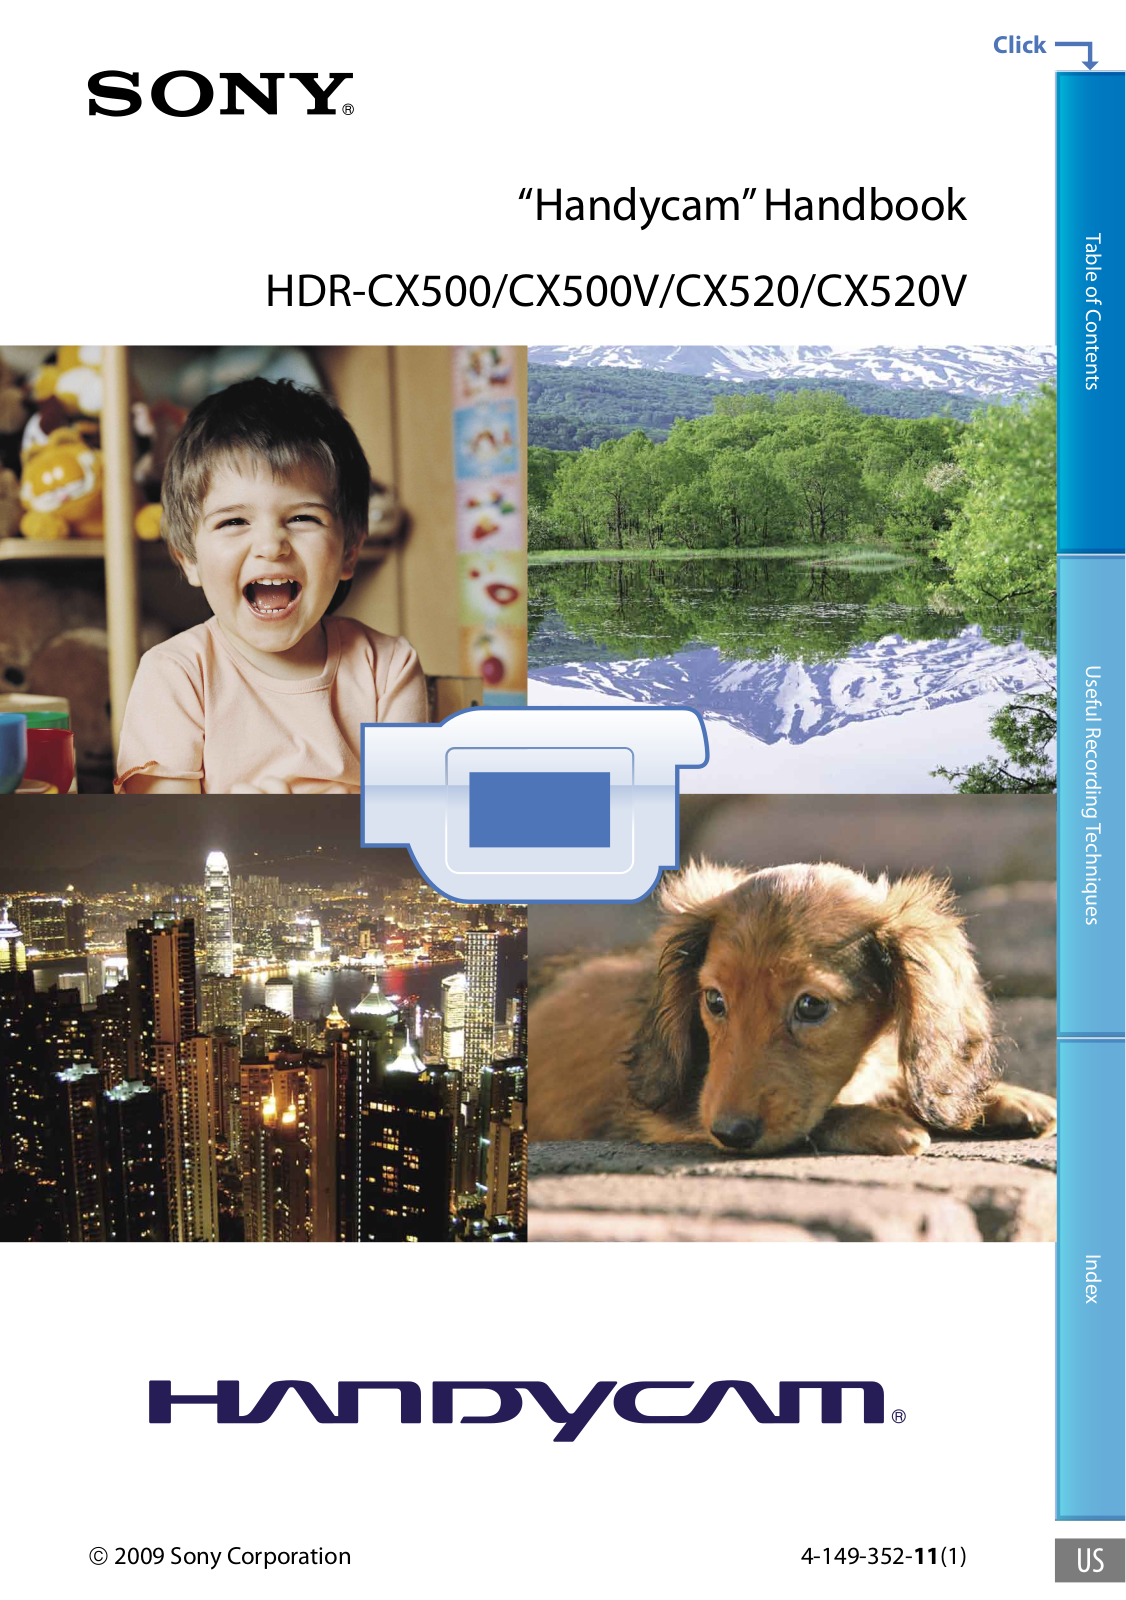 Sony HDR-CX500, HDR-CX500V, HDR-CX520, HDR-CX520V Handbook